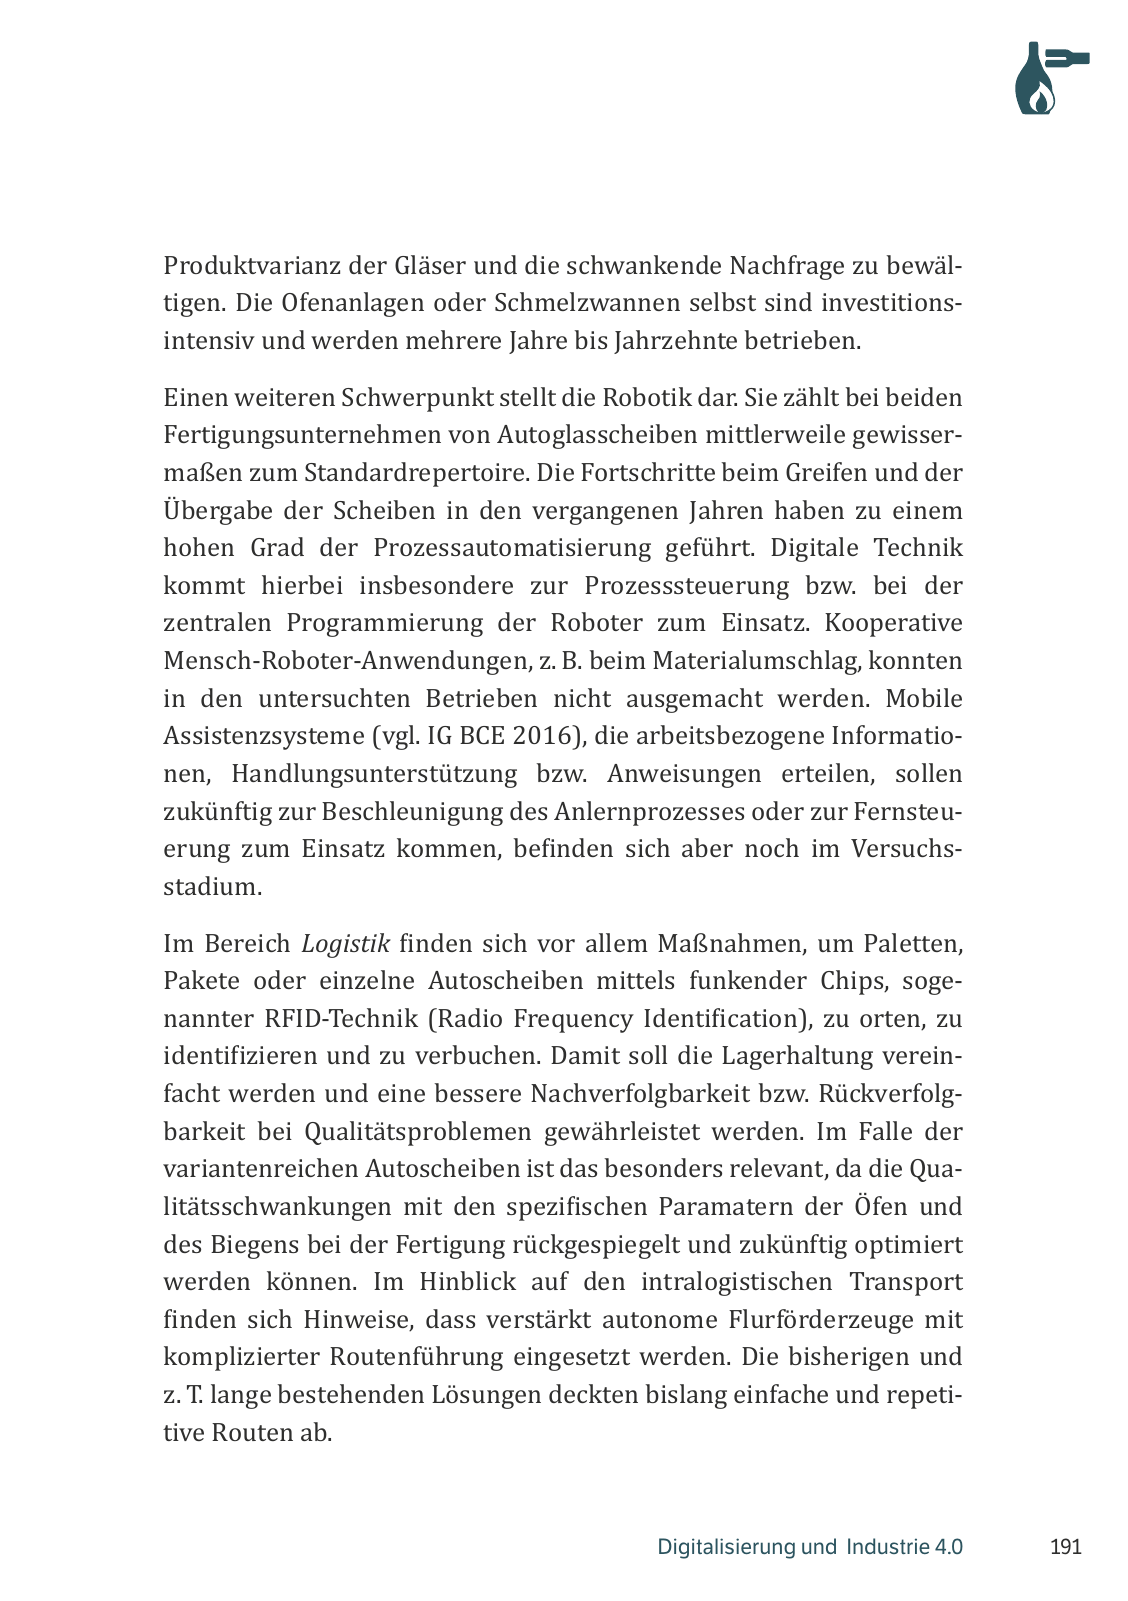 Vorschau M. Vassiliadis // Digitalisierung und Industrie 4.0 Seite 191